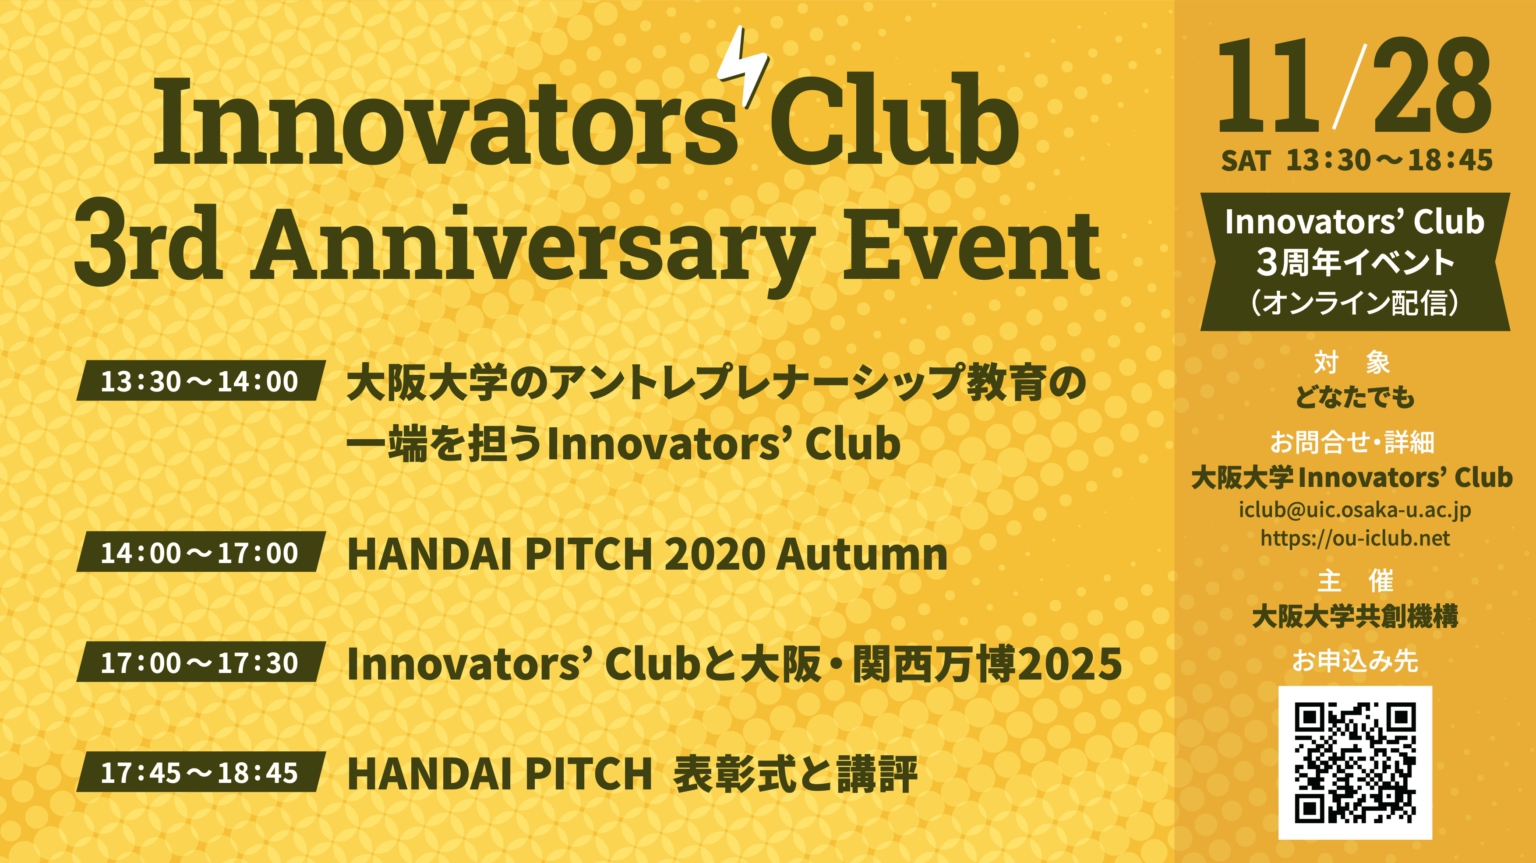 11/28大阪大学Innovators’ Club 【HANDAI PITCH 2020】開催予定